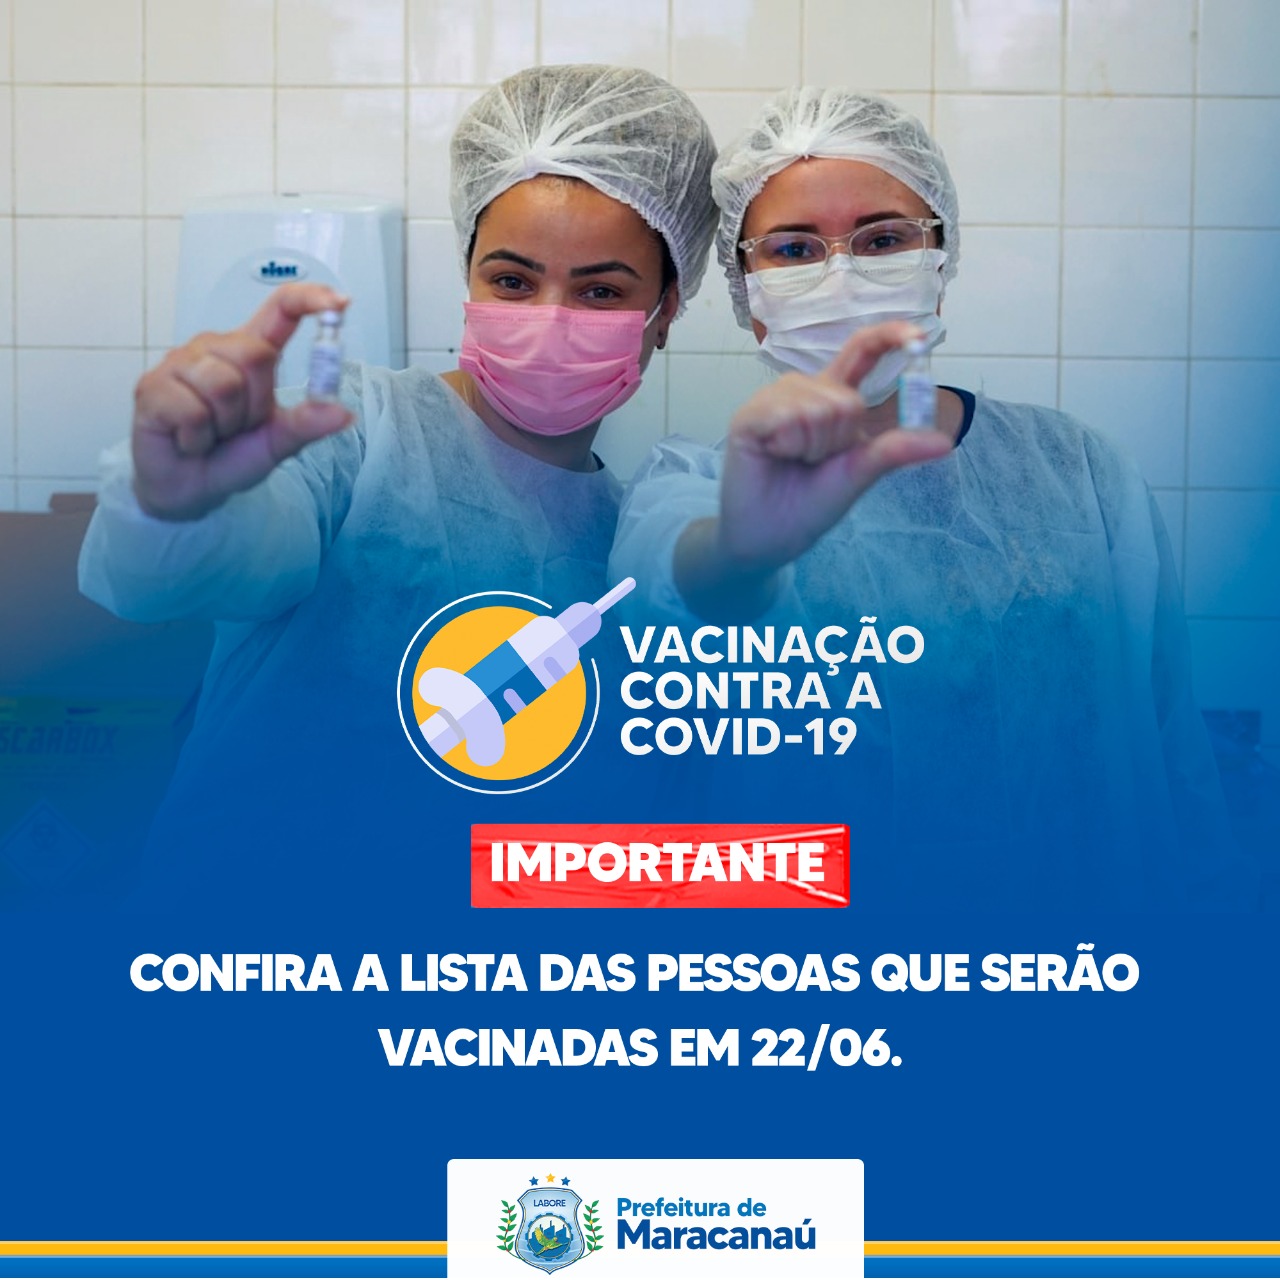 You are currently viewing Confira a lista das pessoas que serão vacinadas nesta terça, 22/06